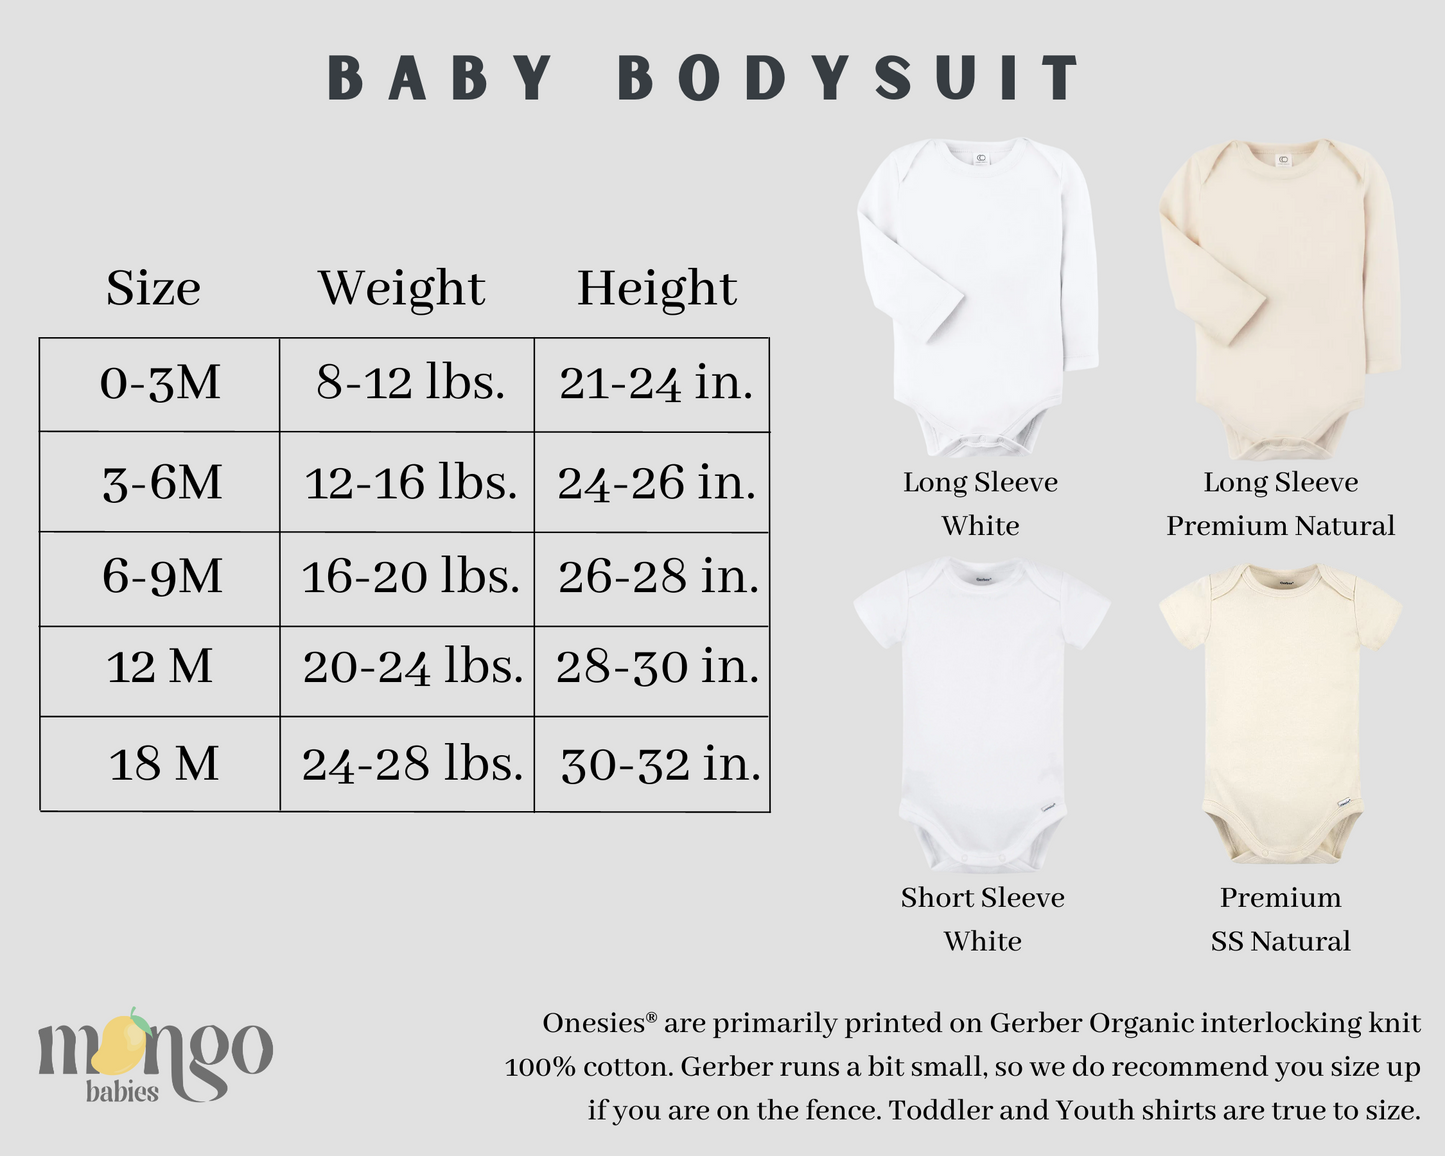 Macaroon Tshirt Baby Onesie® Little Macaroon Baby Bodysuit Newborn Outfit Baby Shower